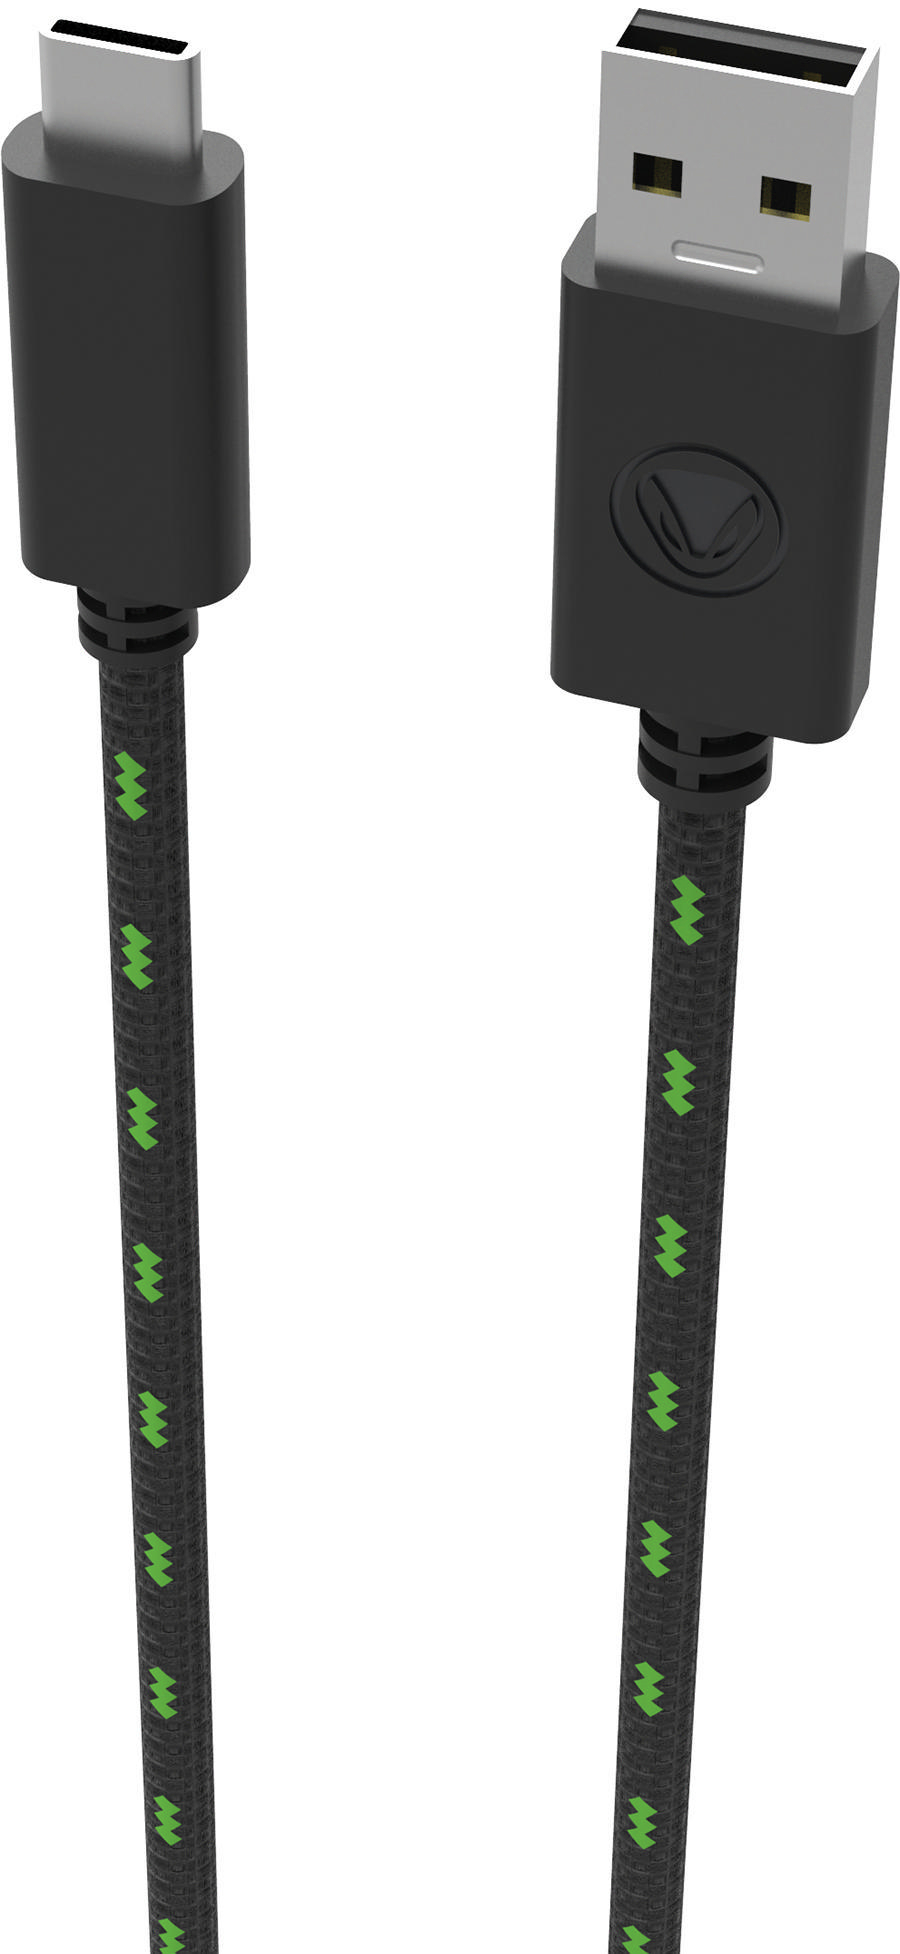 CHARGE:CABLE Zubehör Schwarz/Grün XSX (3M) für SX™ XSX, USB SNAKEBYTE